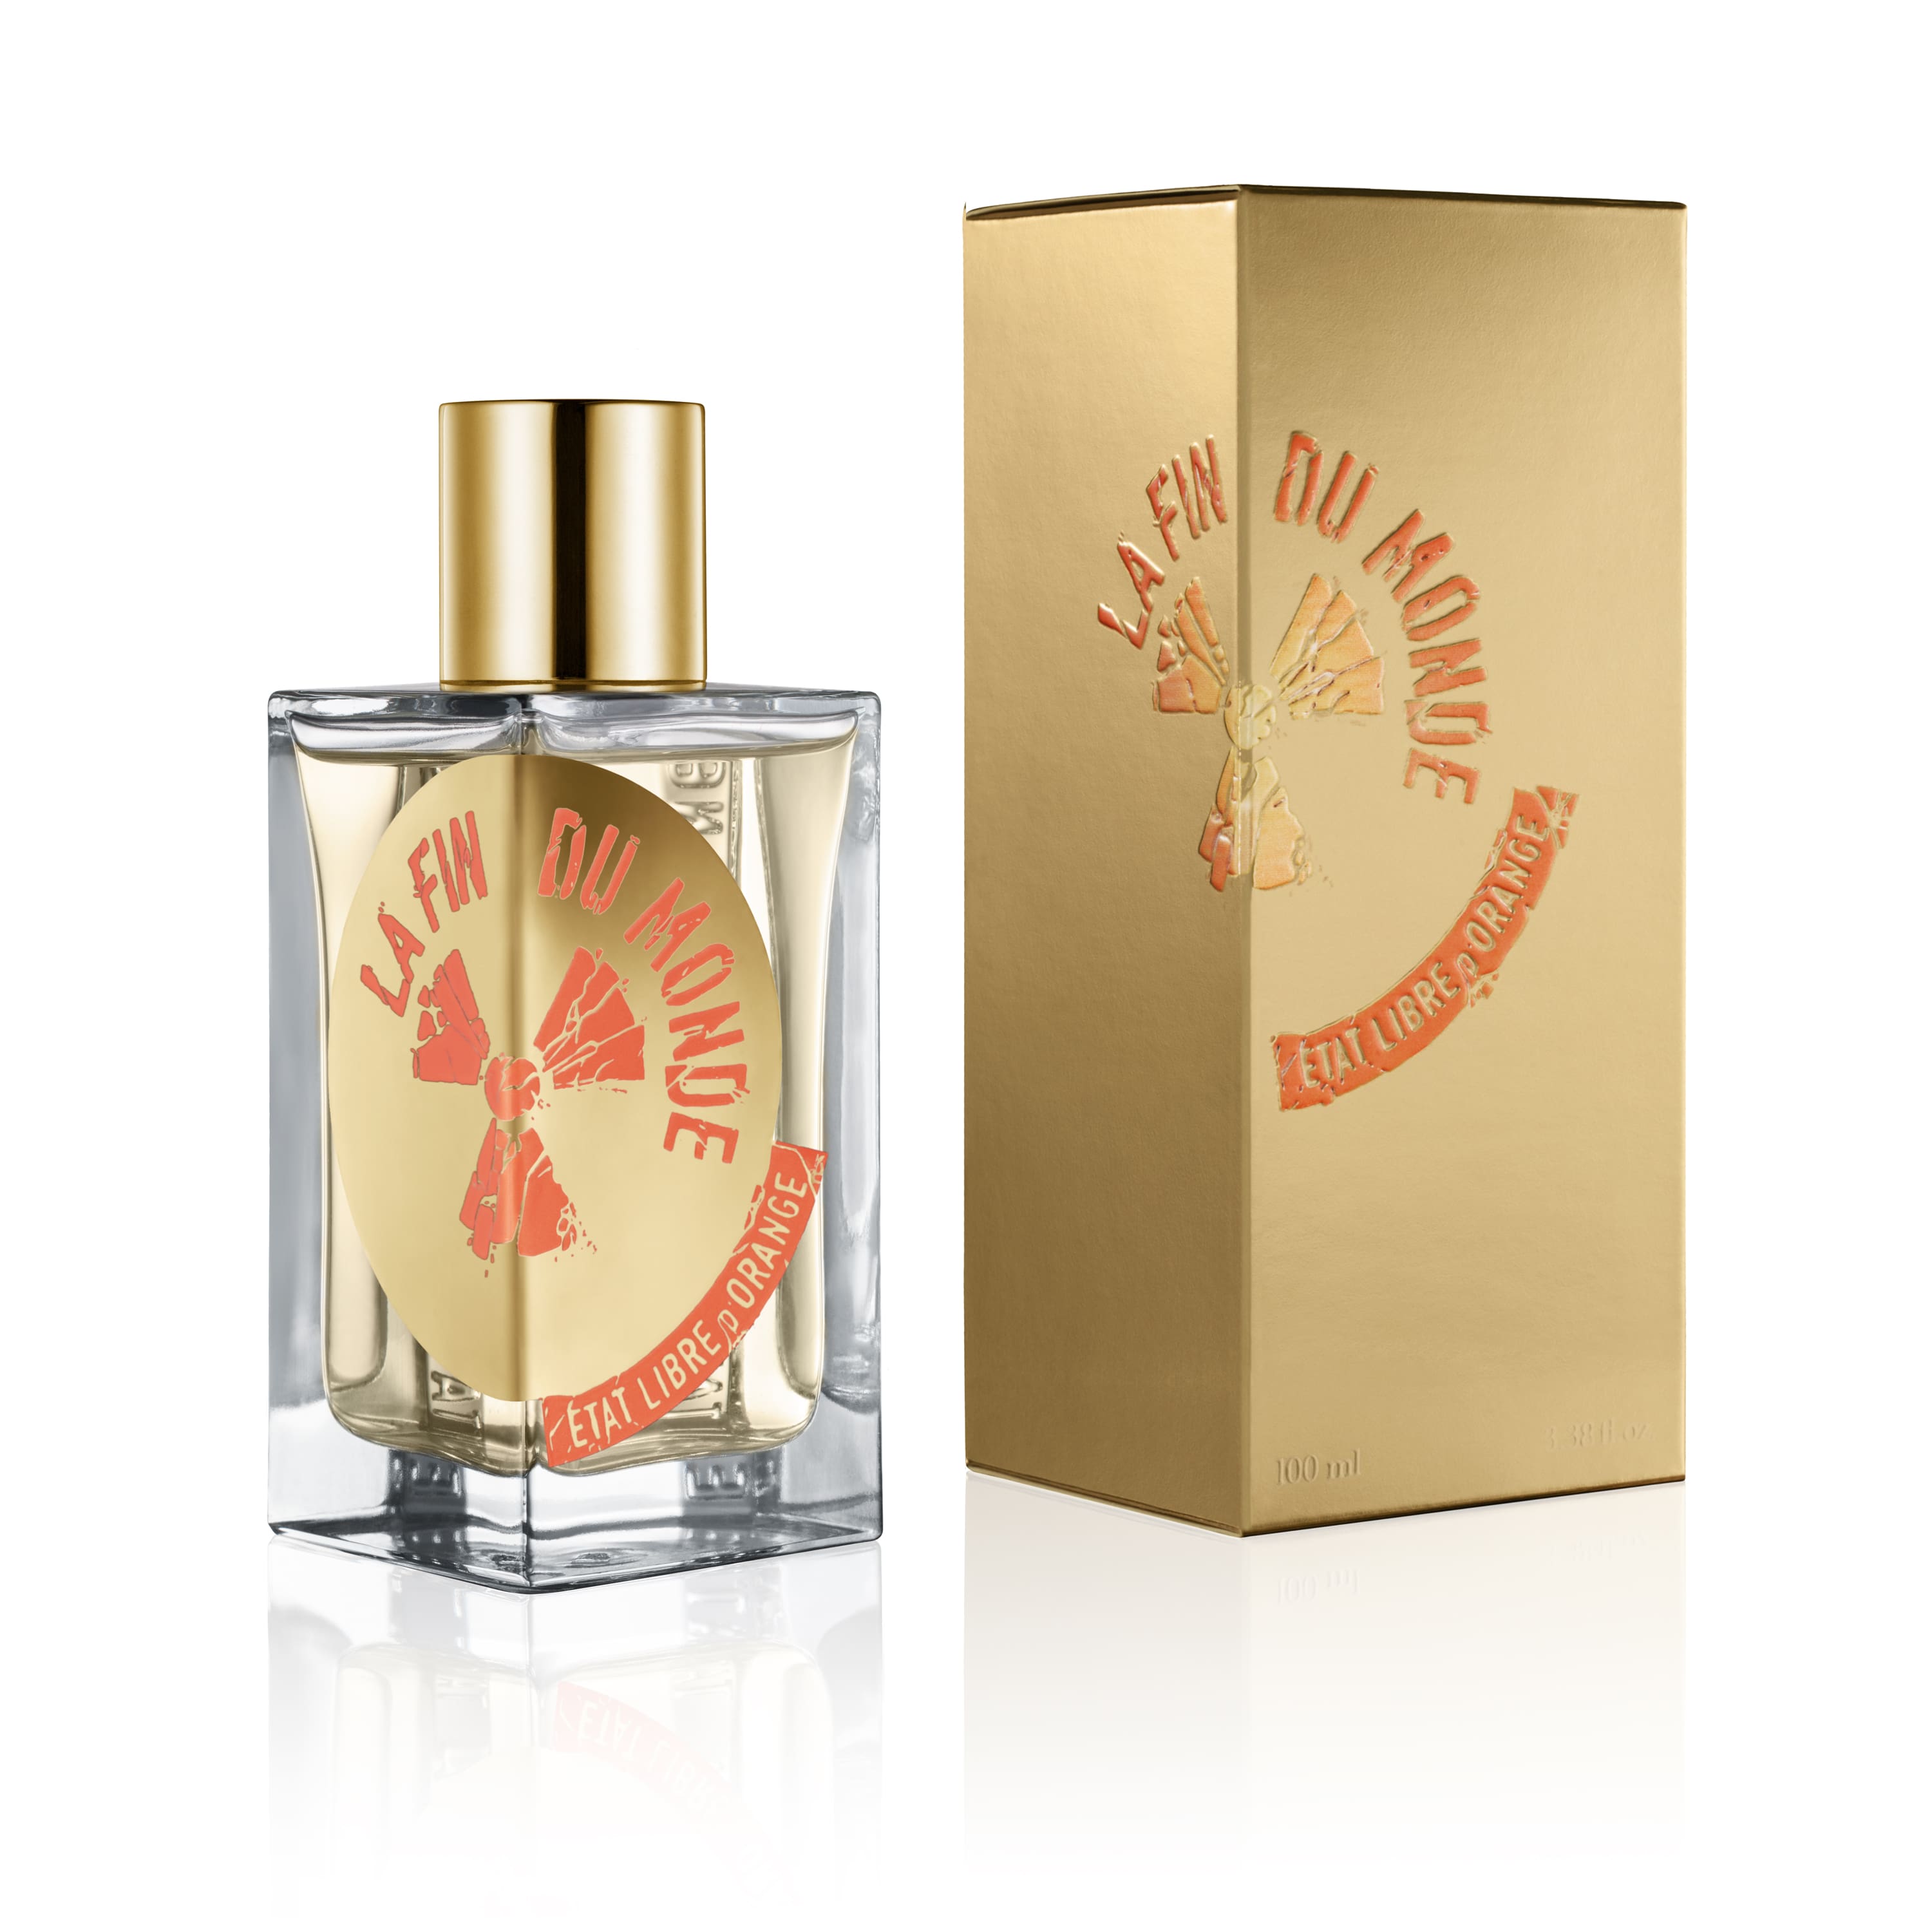 La Fin du Monde - Eau de Parfum | Etat Libre d'Orange